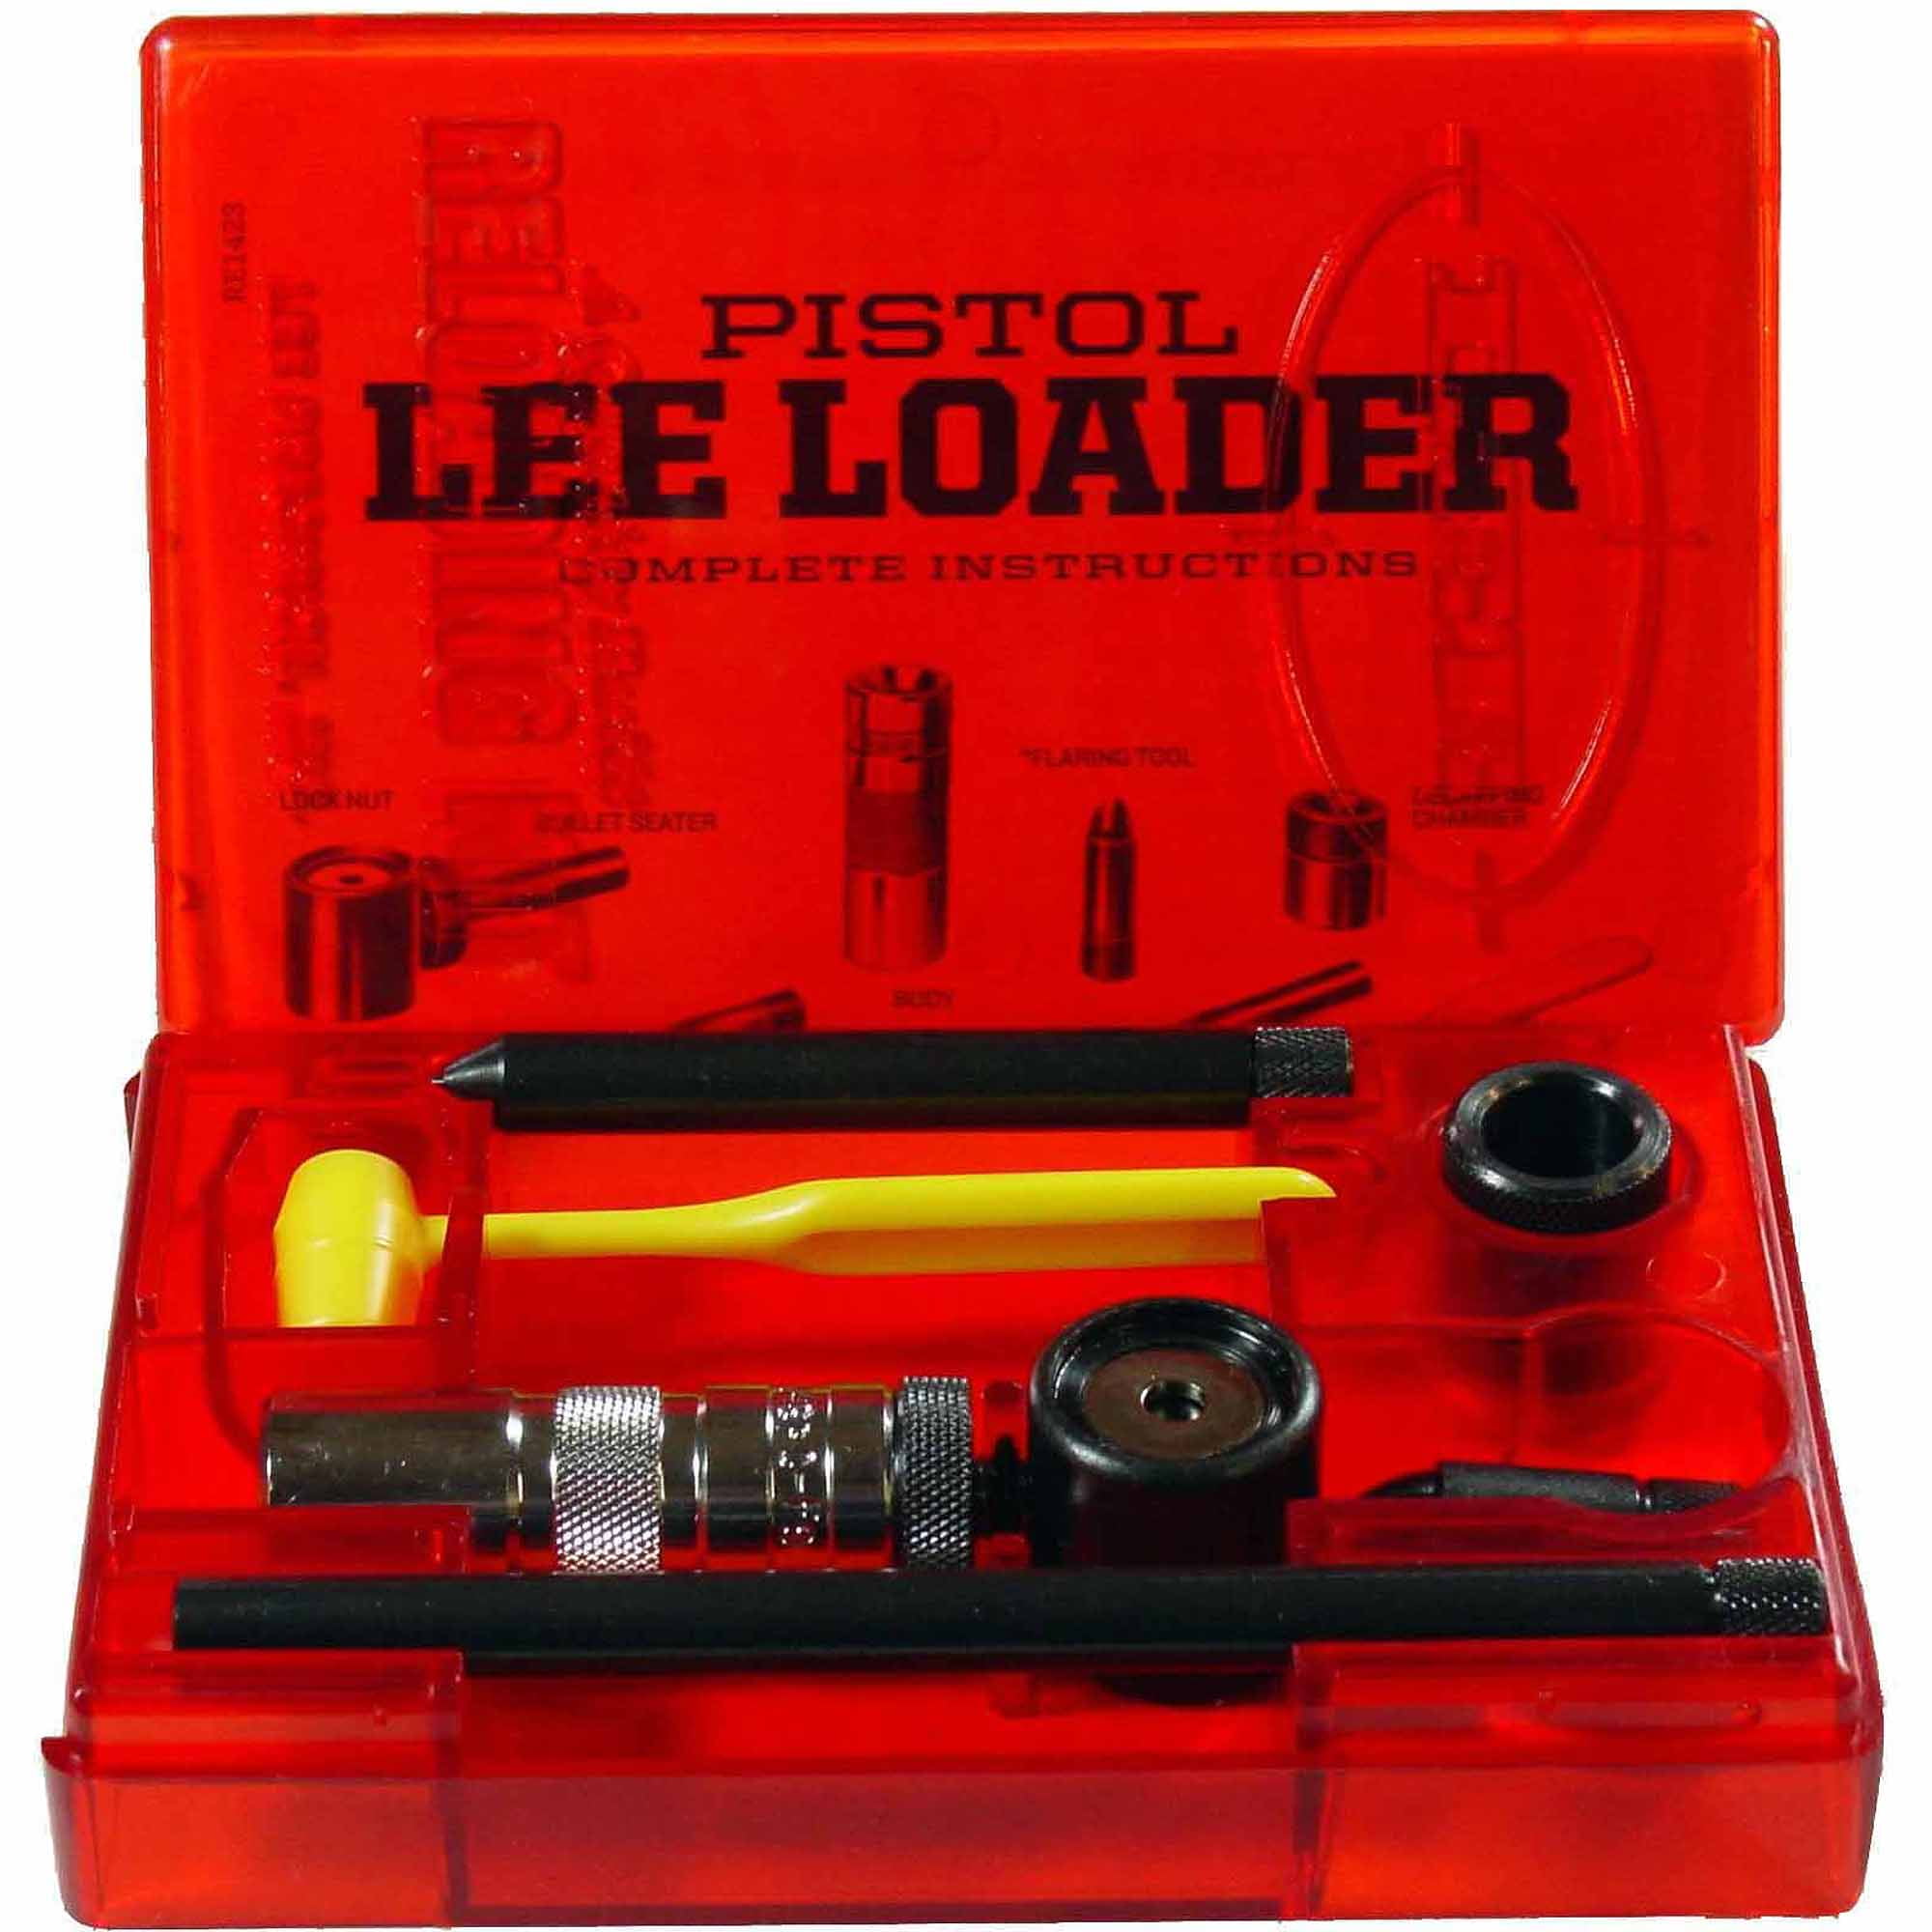 Lee Precision Loader, 9mm Luger